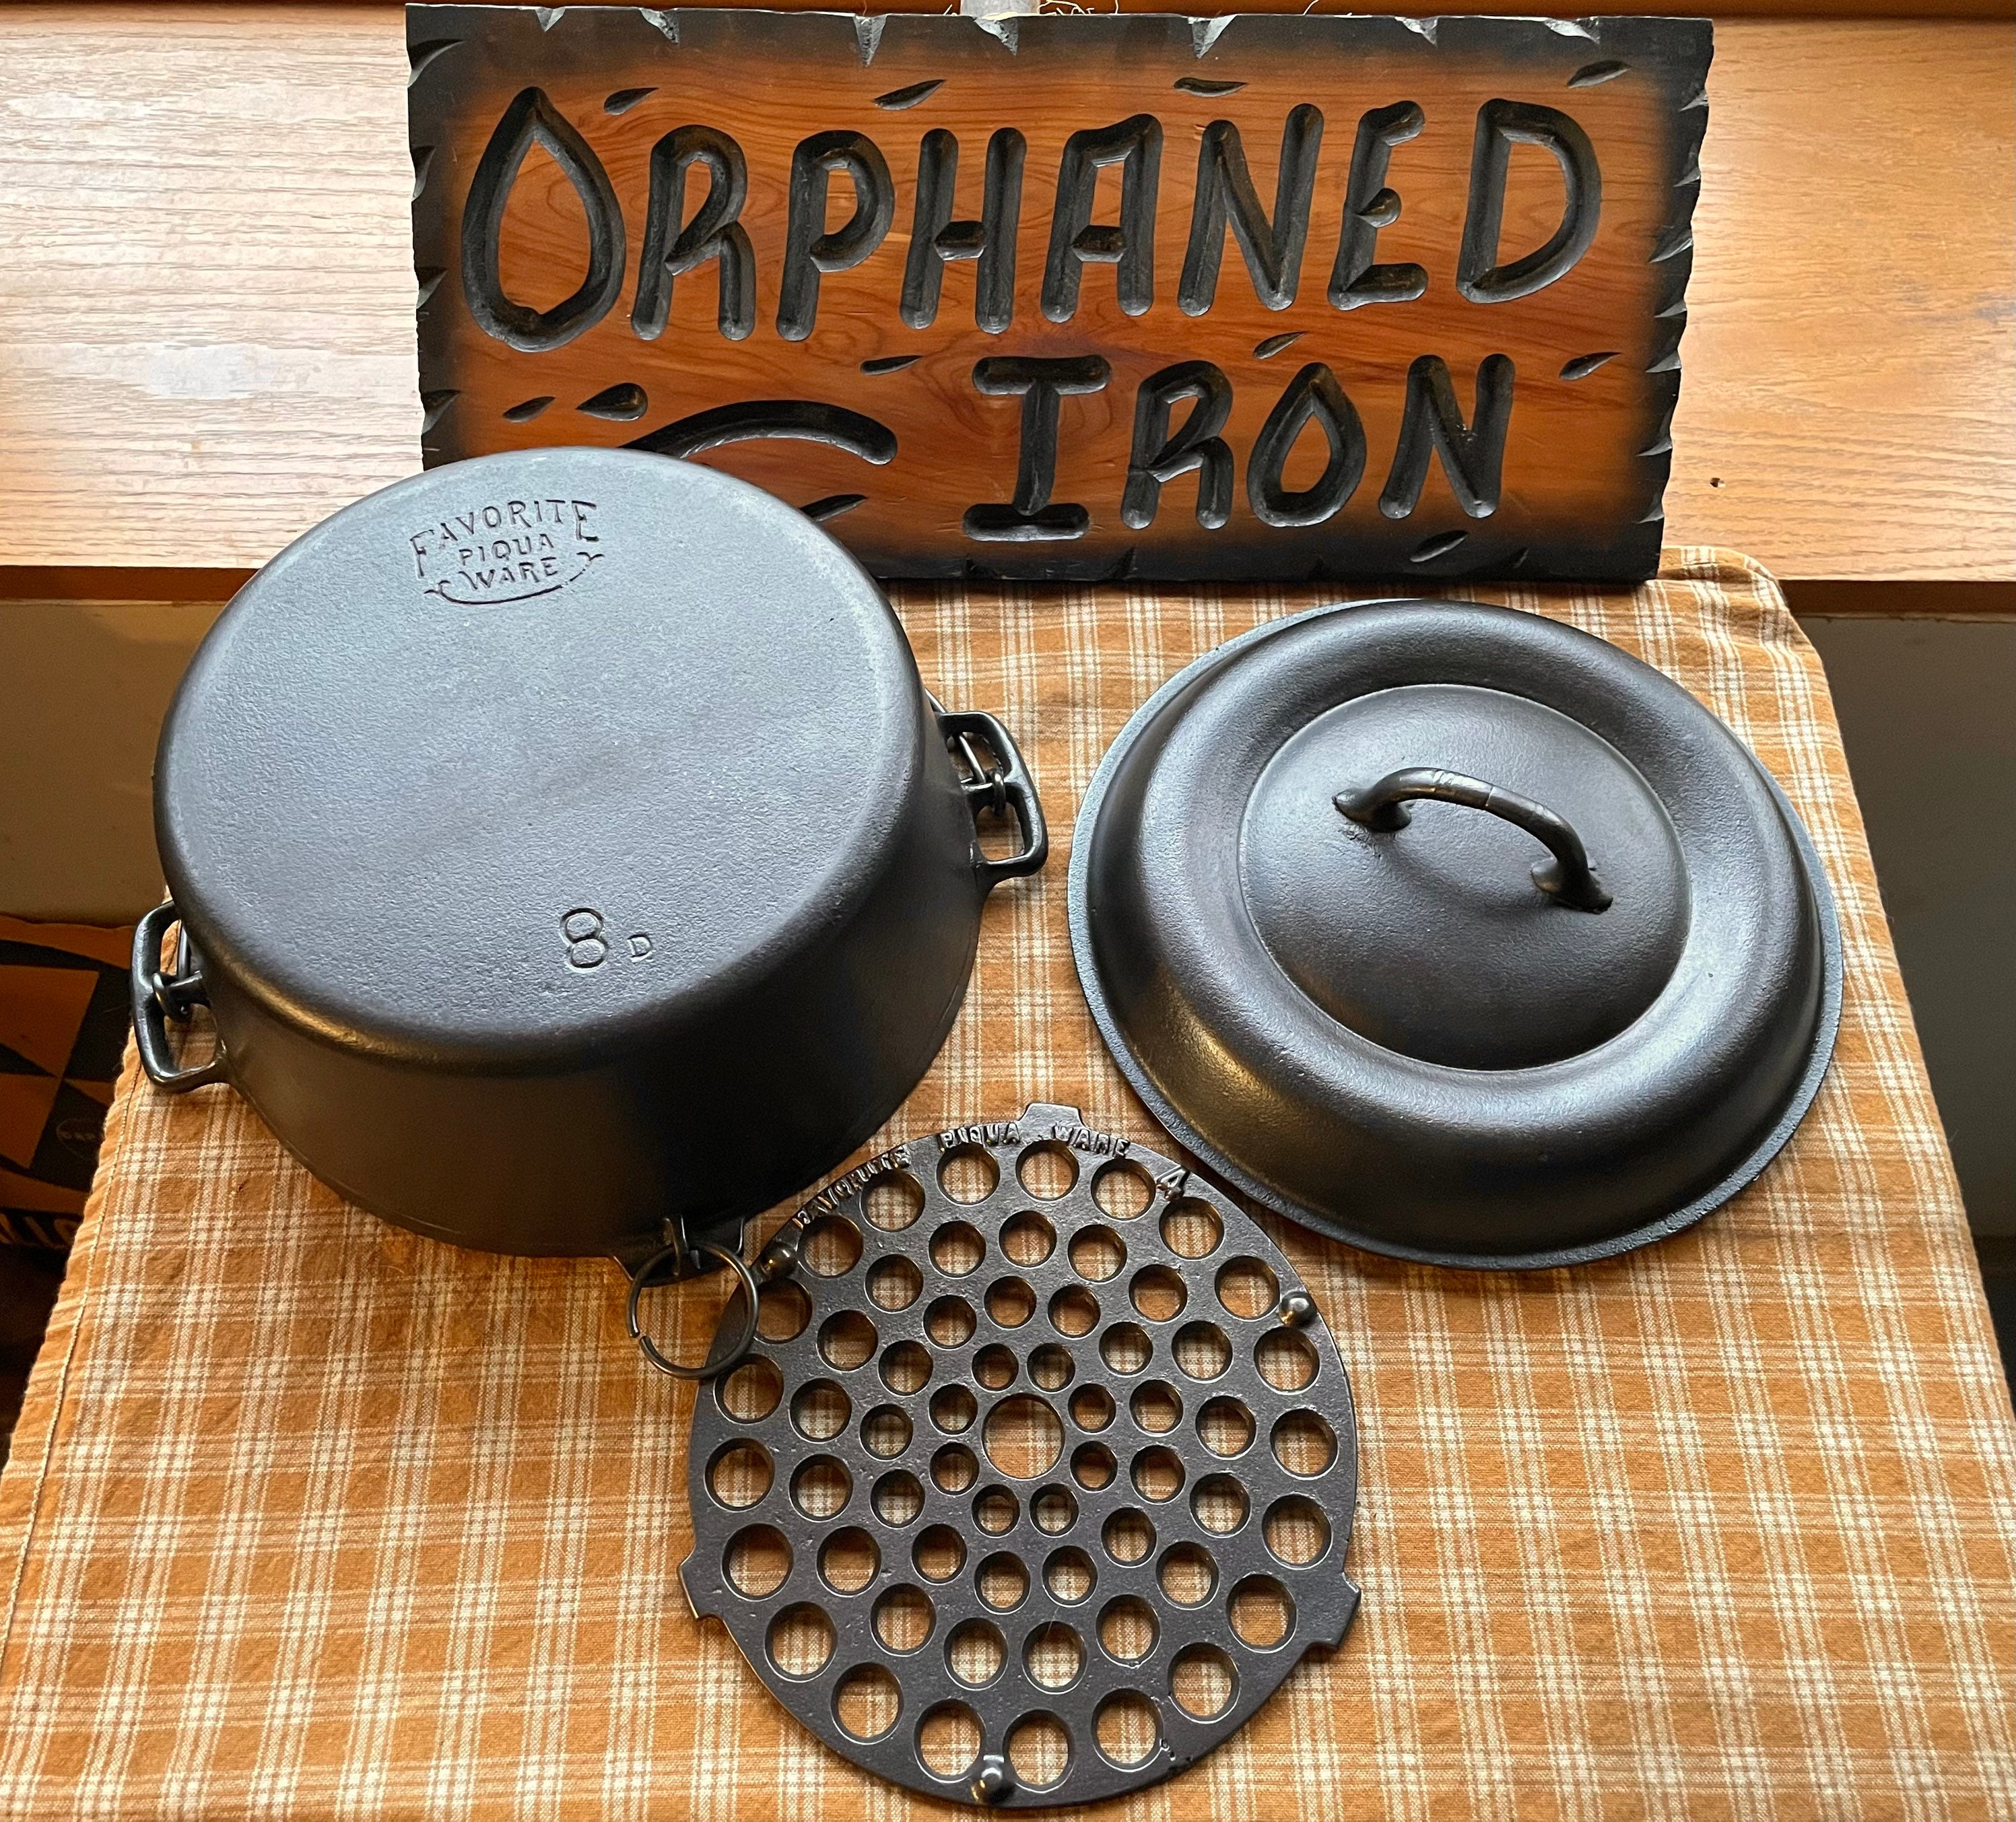 Versatile Trivets for Your Cast Iron Dutch Oven